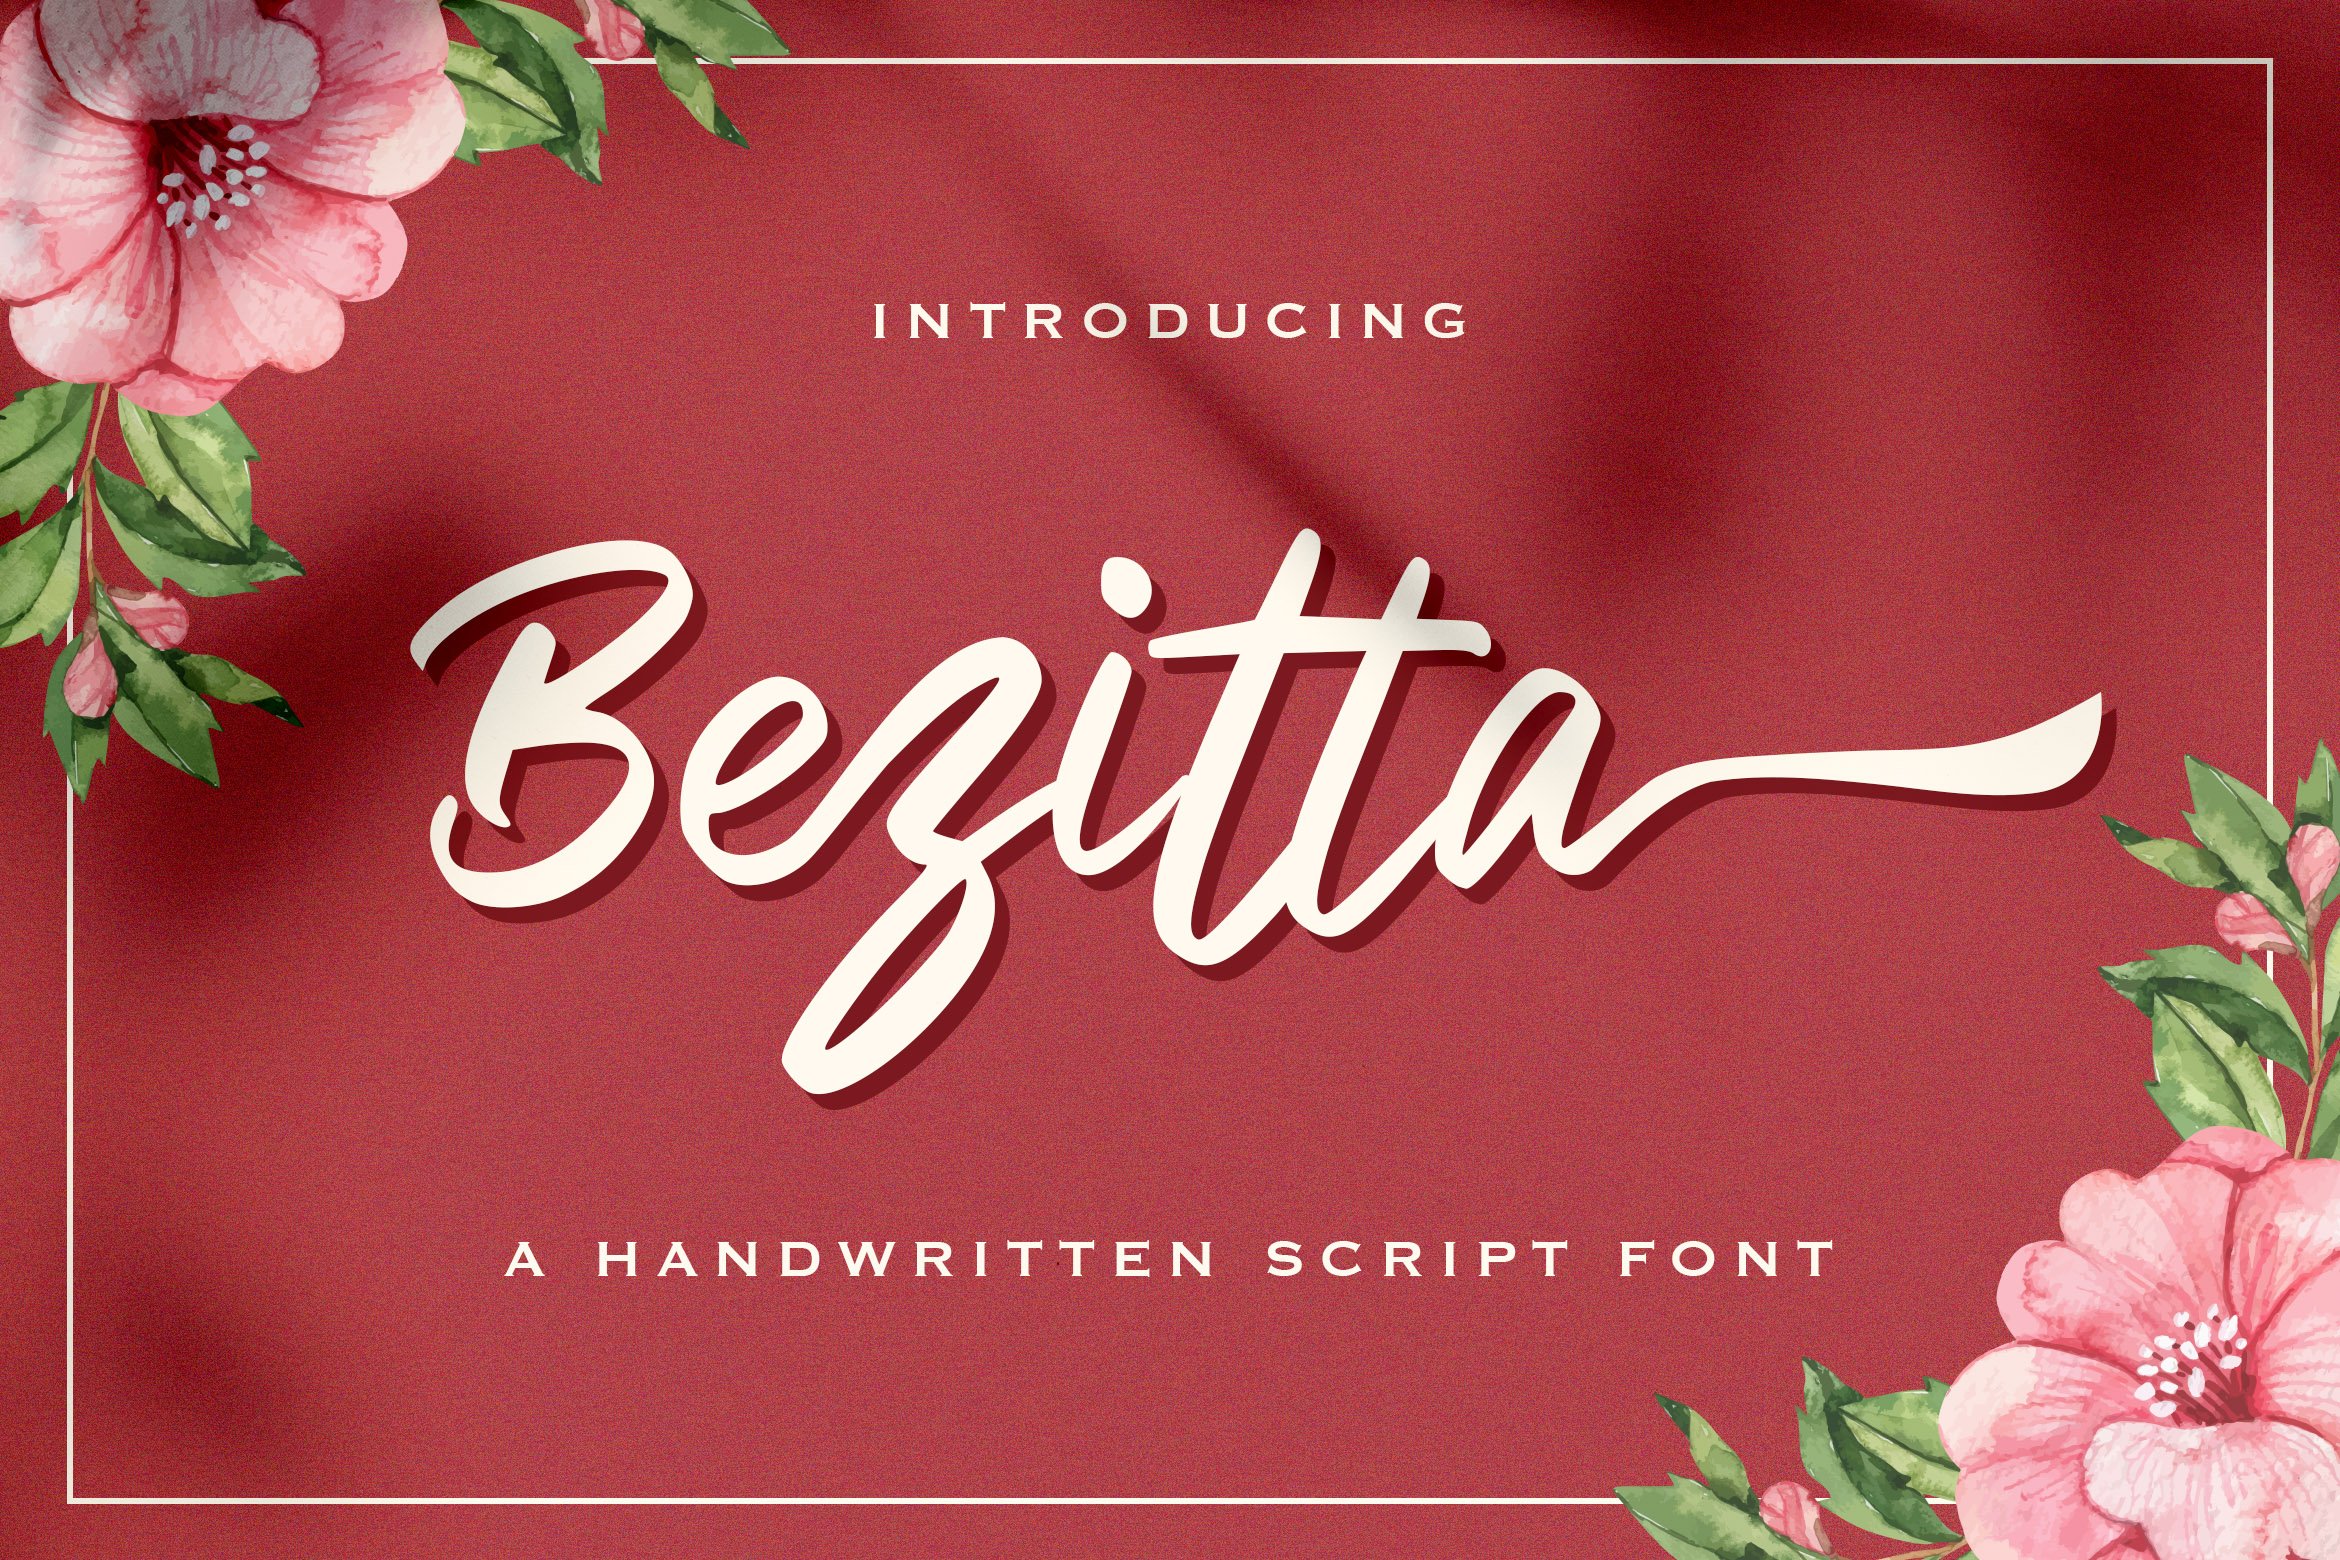 Bezitta - Handwritten Font cover image.